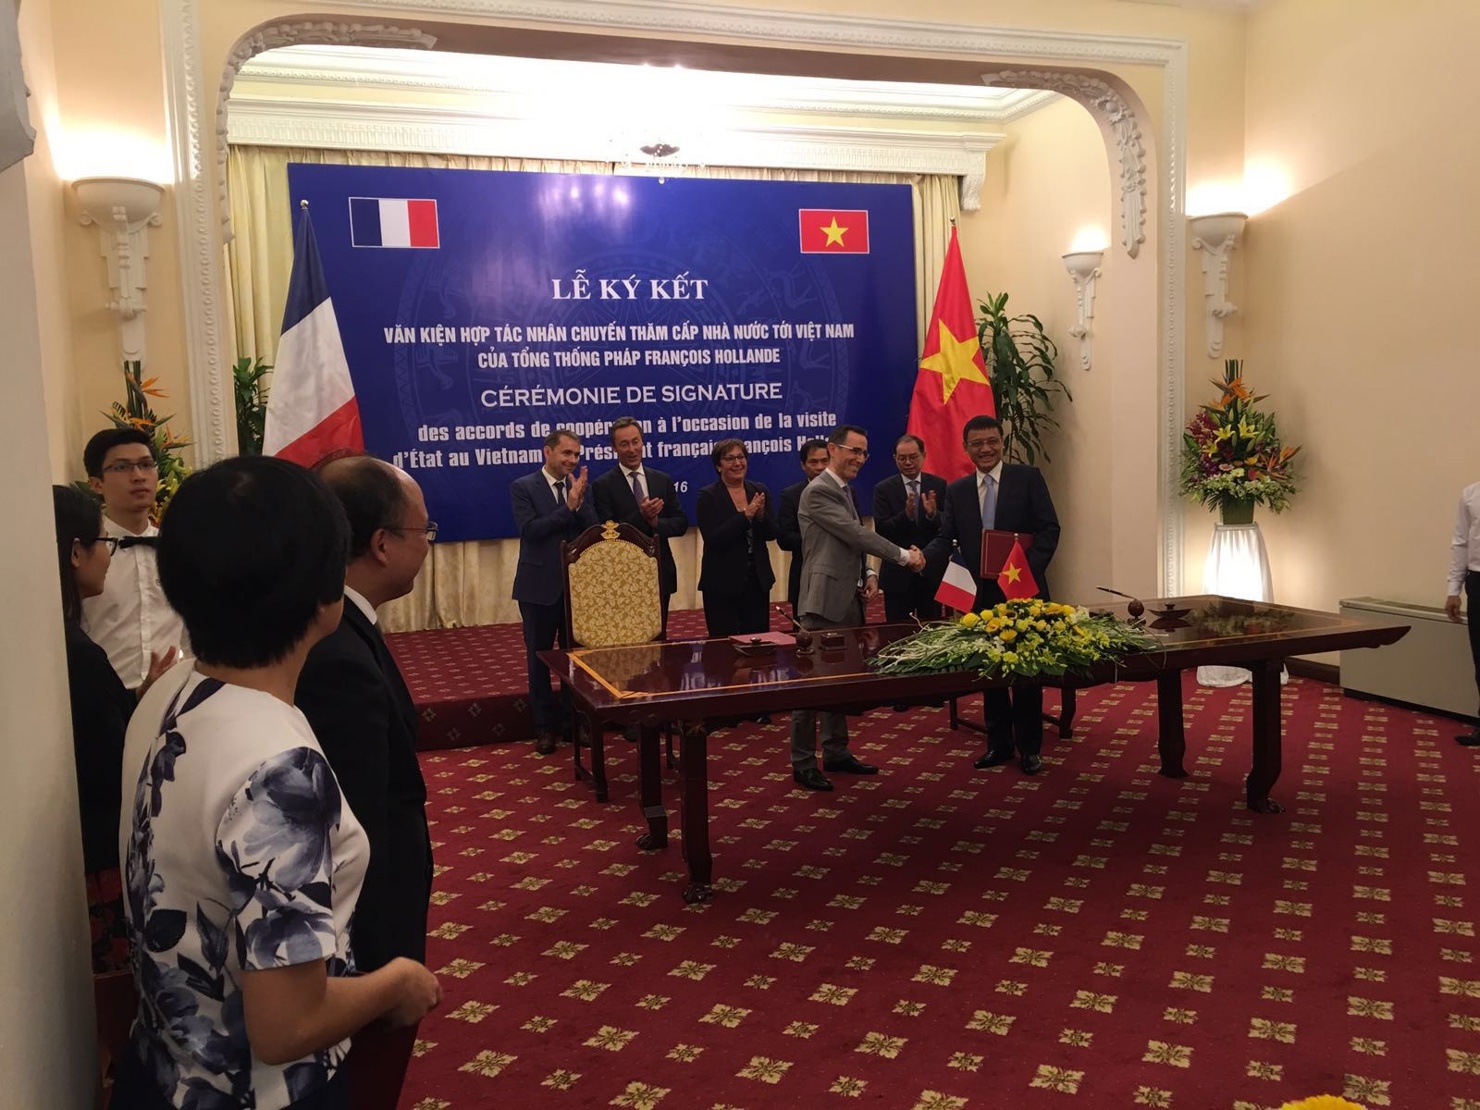 Lễ ký kết văn kiện hợp tác nhân chuyến thăm cấp Nhà nước tới Việt Nam của Tổng thống Pháp François Hollande. 